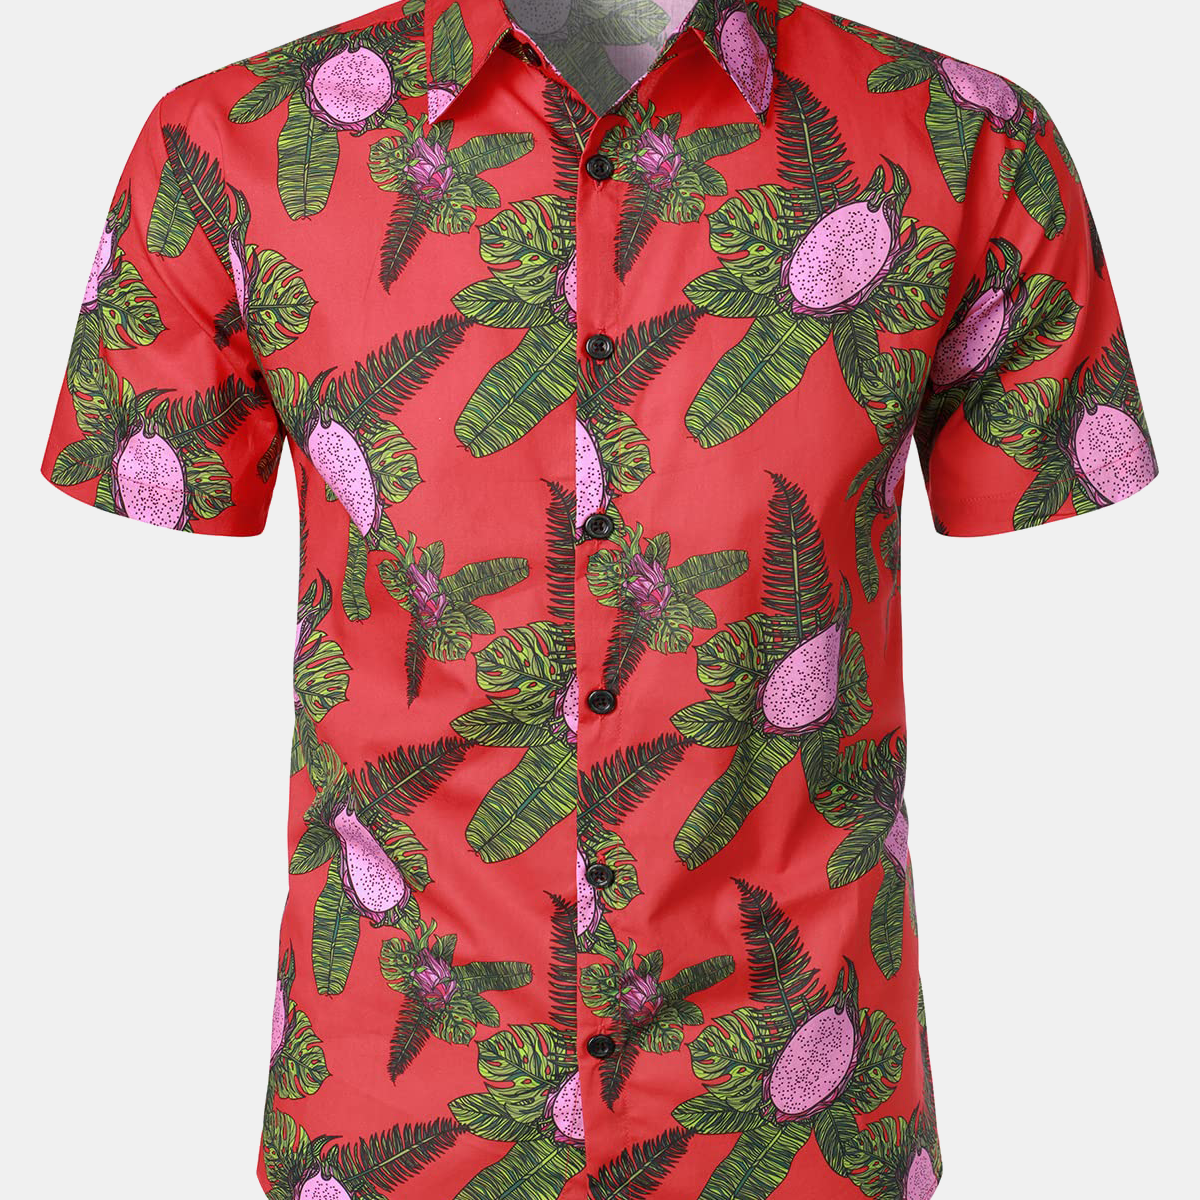 Men's Red Hawaiian Pitaya Print Summer Fruit Short Sleeve Hawaiian Shirt